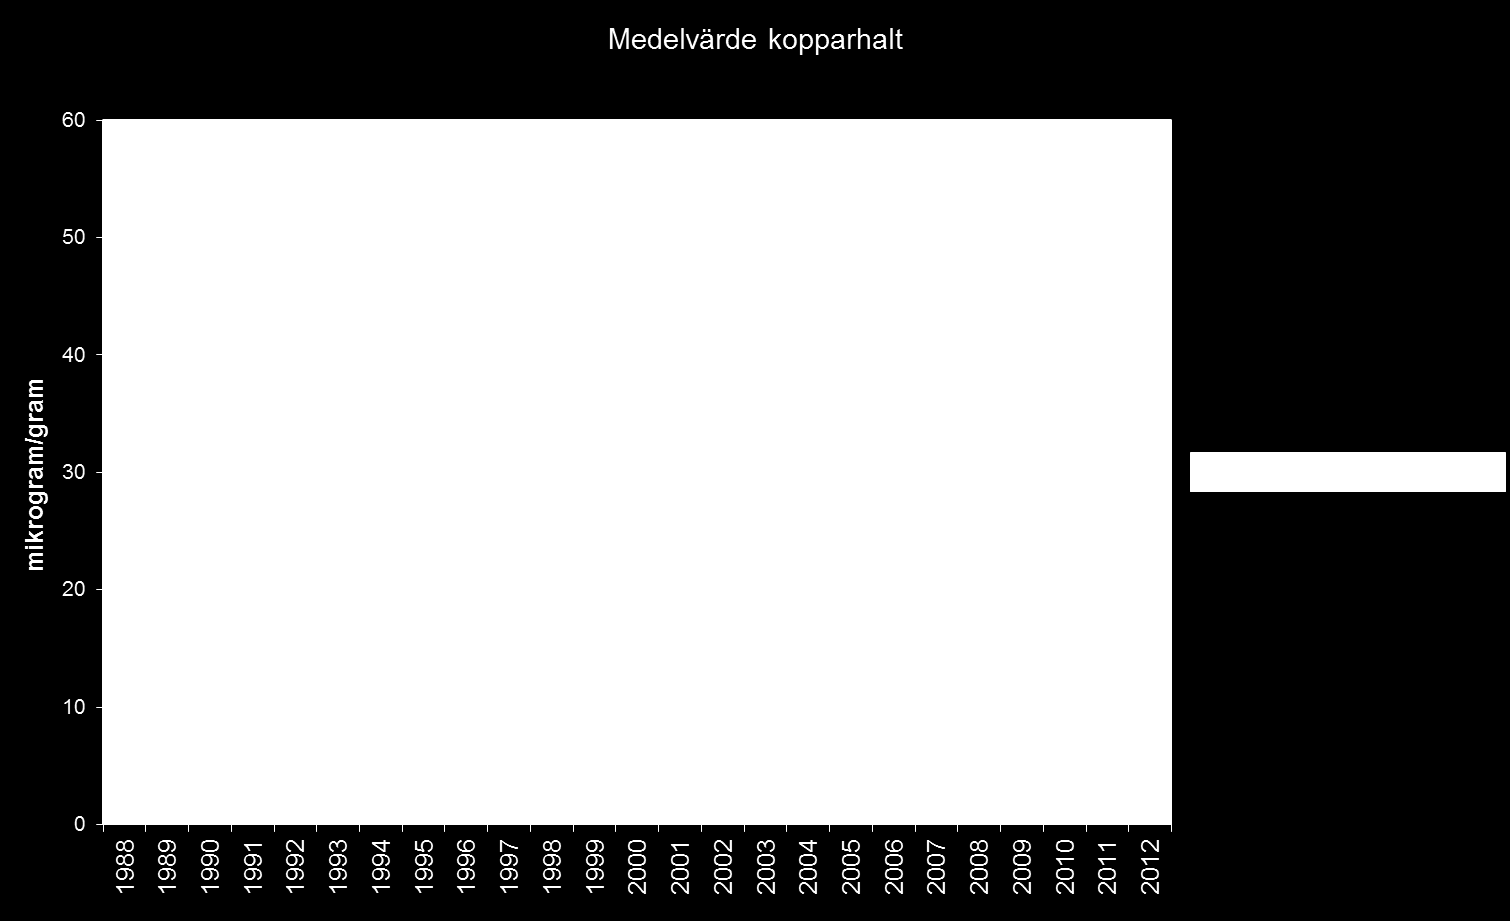 8(12) Koppar Huvudsaklig lokal utsläppskälla: ScanDust. Medelvärdet för samtliga mätplatser i Landskrona 2012 var 12,18 g/g jämfört med 18,56 g/g 2011.